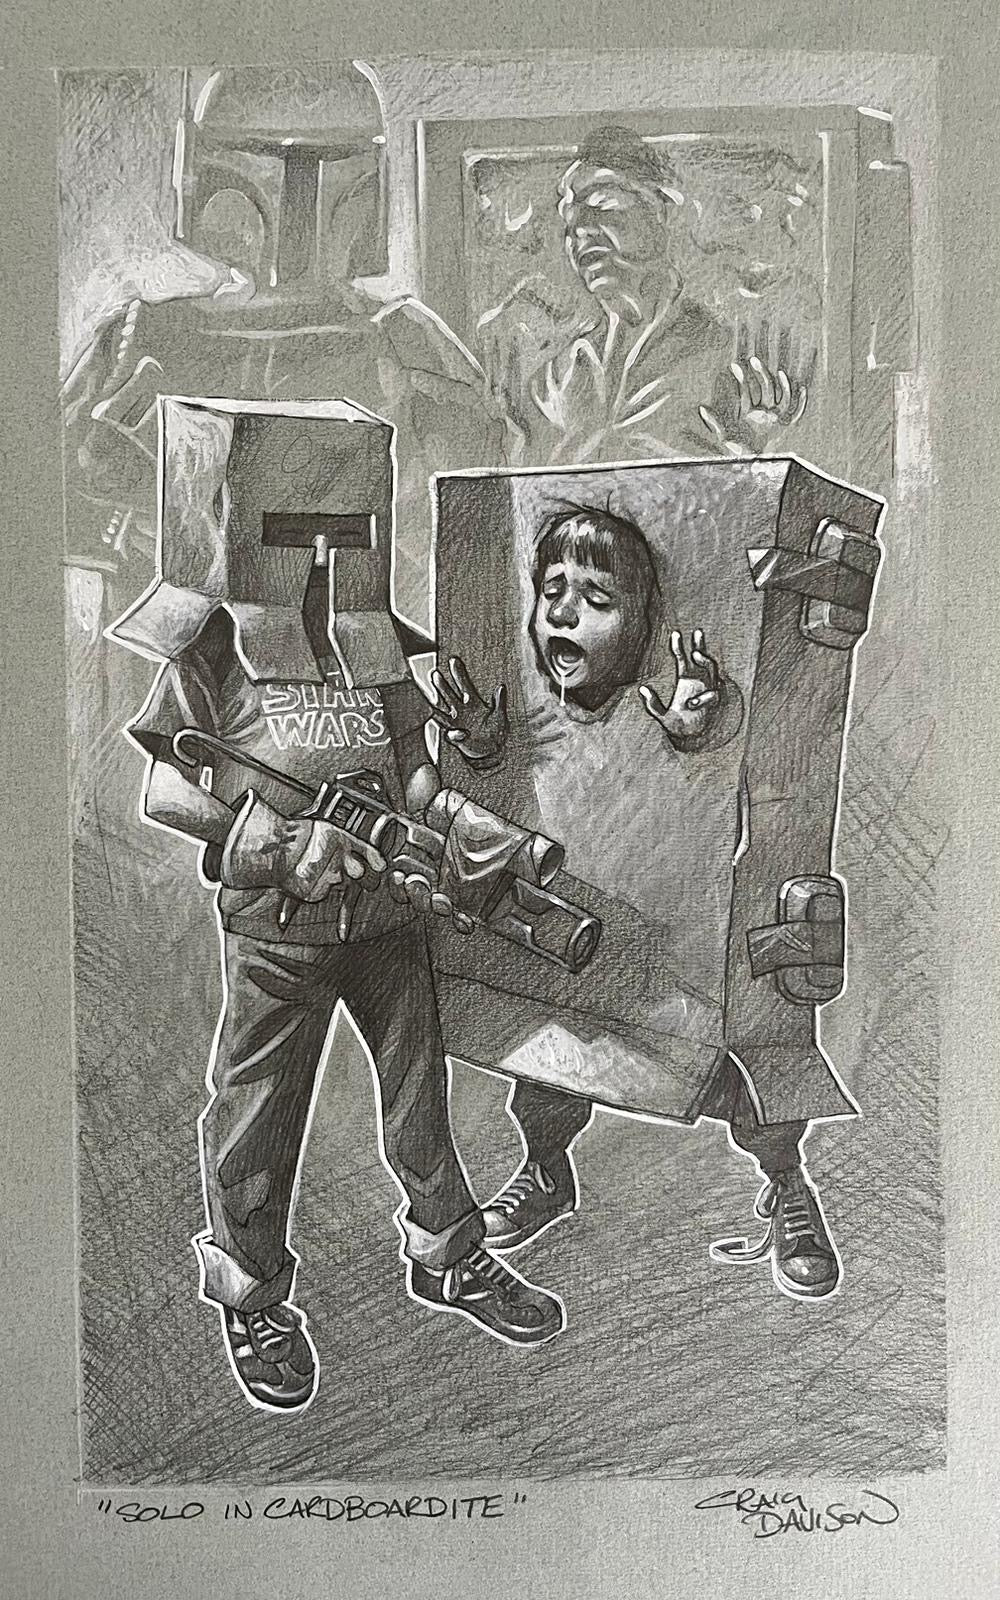 Solo in Cardboardite Original Pencil Sketch by Craig Davison